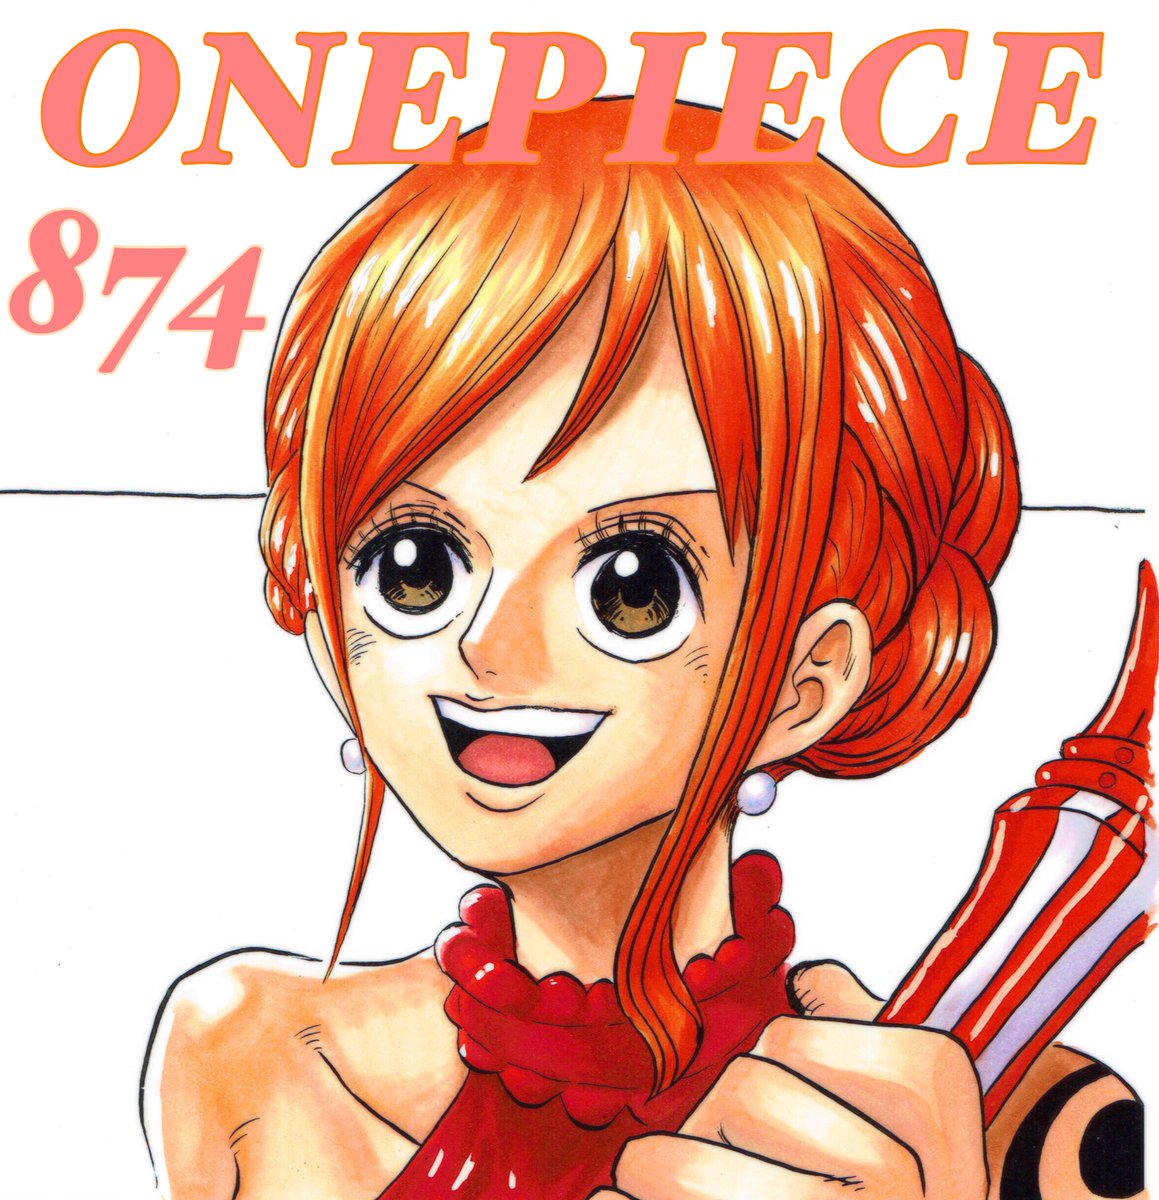 Hatsu S Colorpage V Twitter 私のしもべになる One Piece 第874話 私のしもべになりなさい より